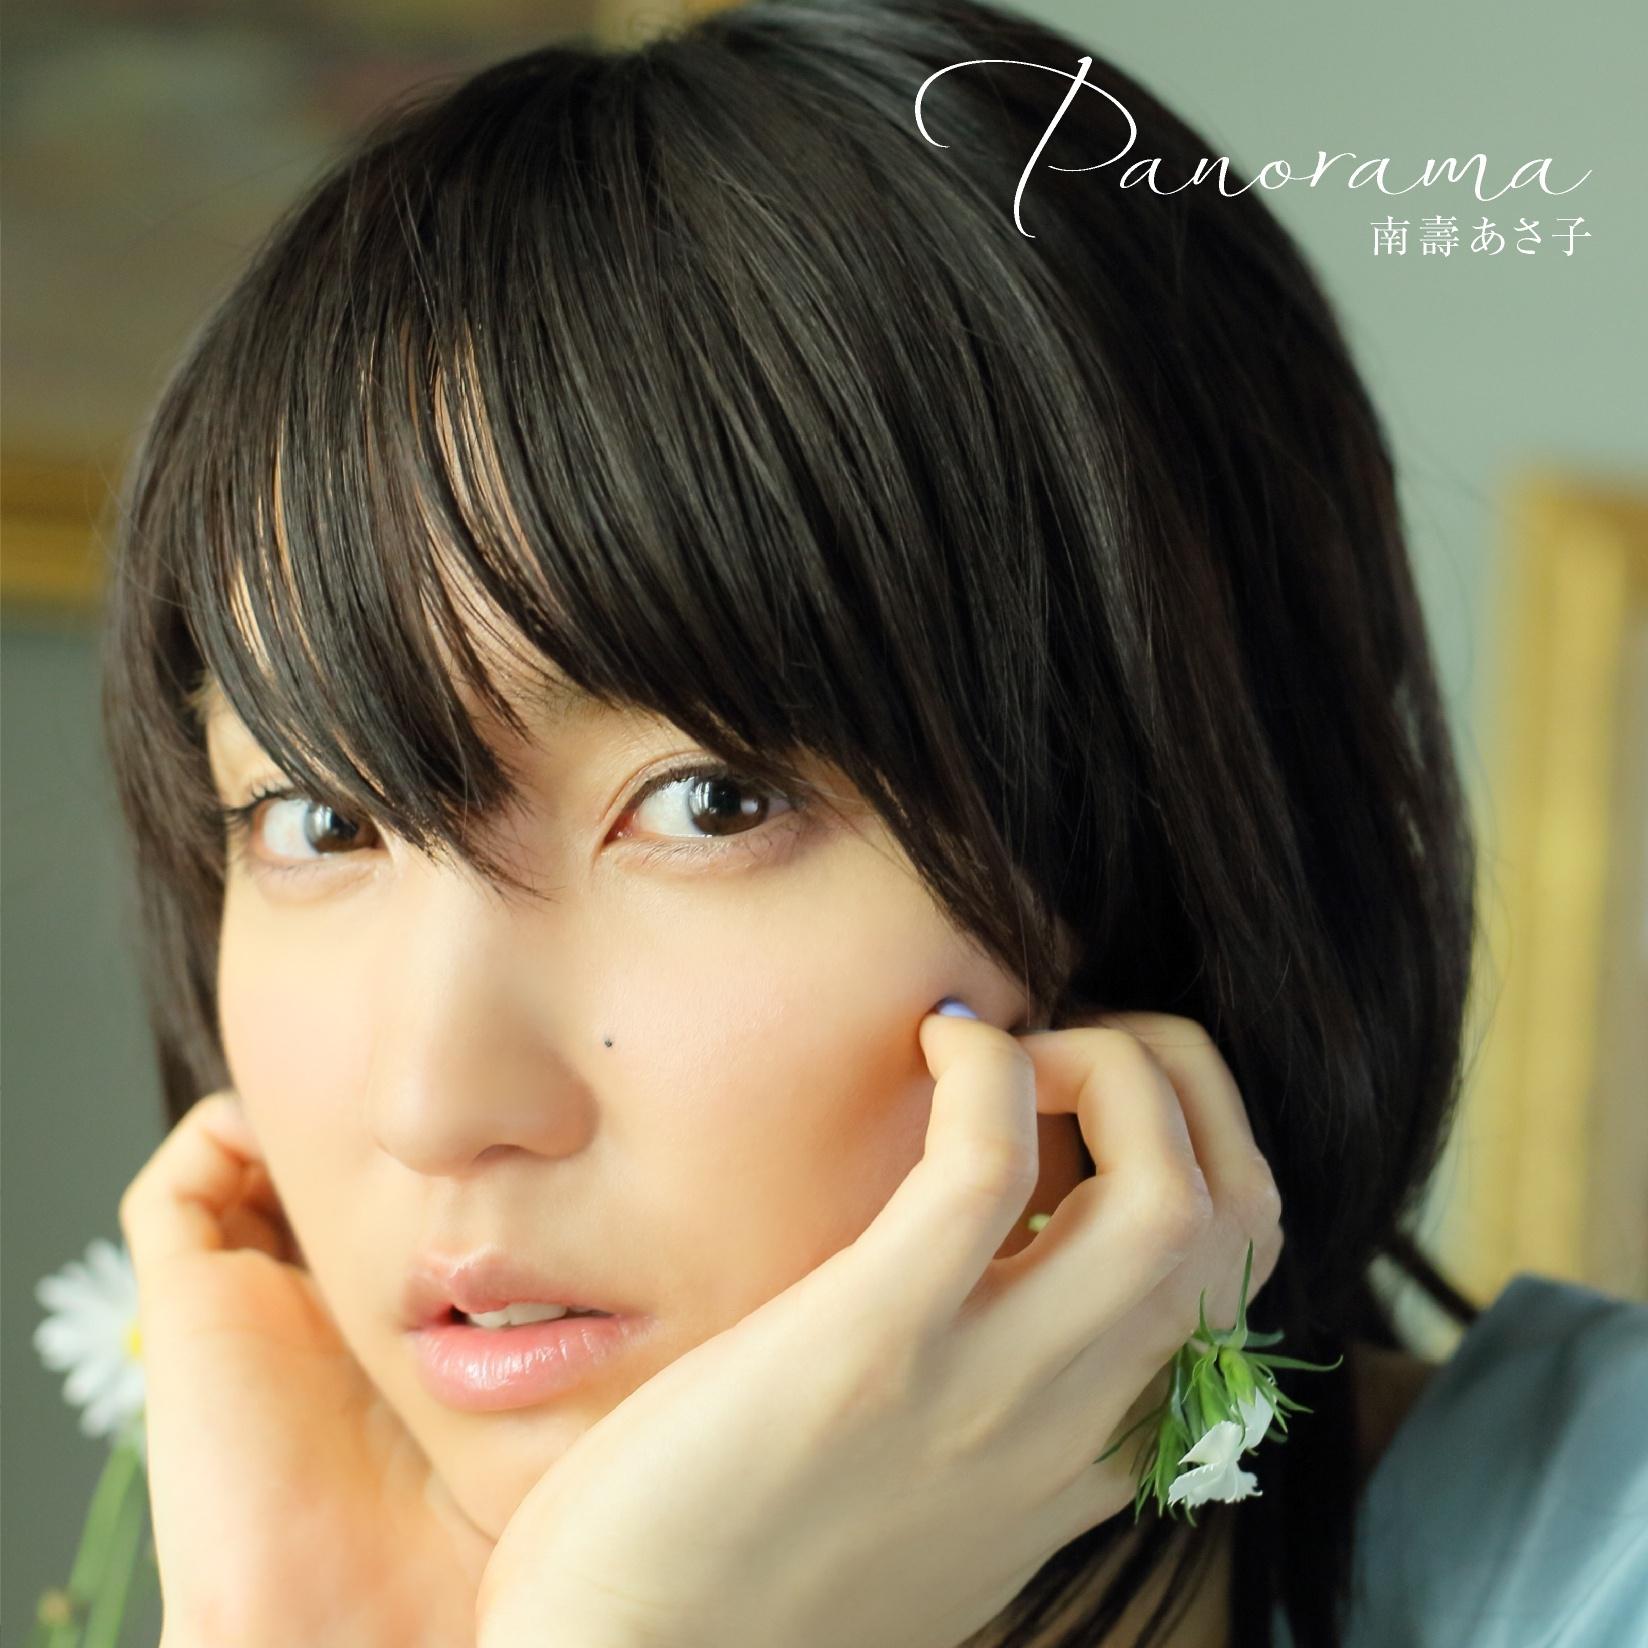 ちいさなラズベリー歌词 歌手南壽あさ子-专辑Panorama-单曲《ちいさなラズベリー》LRC歌词下载